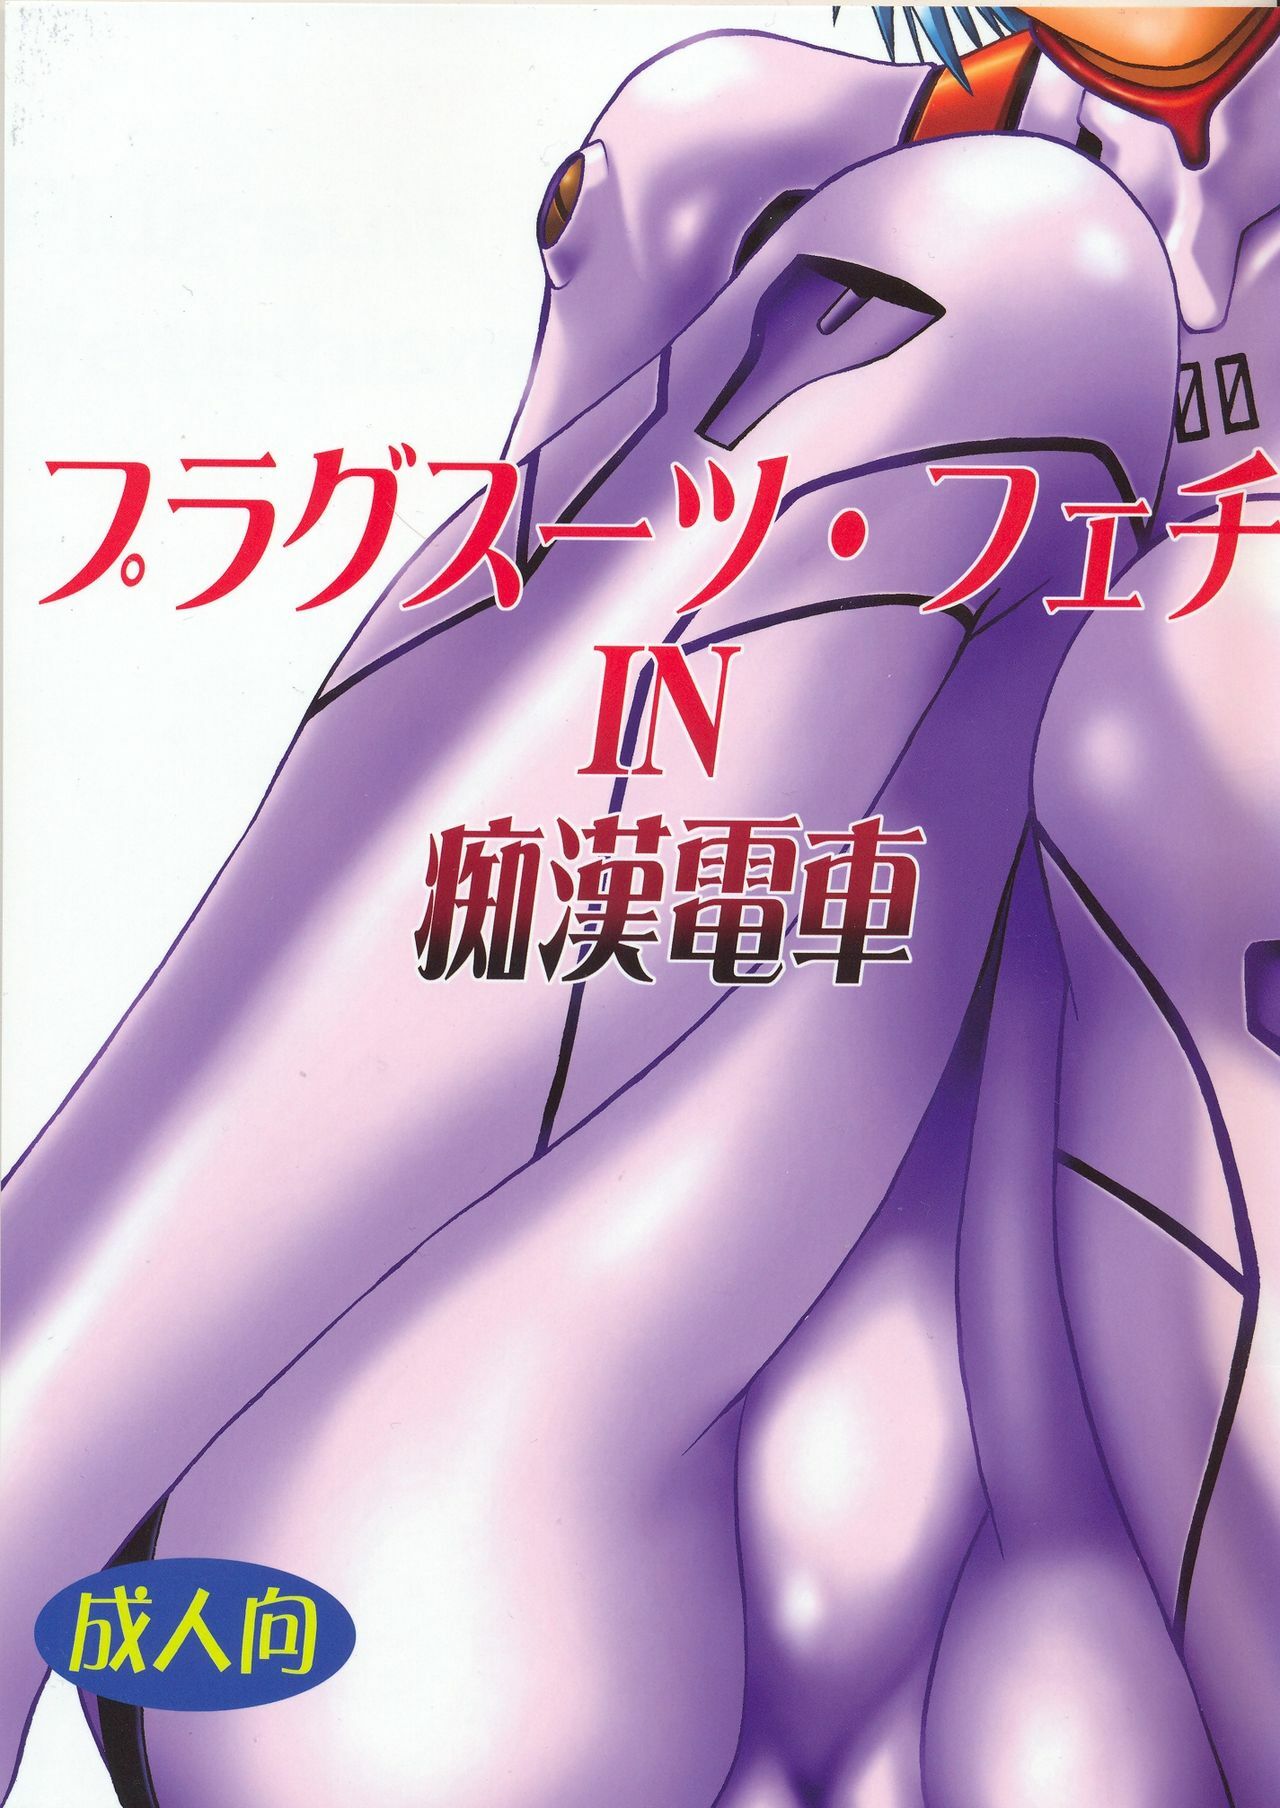 (SC32) [Studio Katsudon (Manabe Jouji)] Plug Suit Fetish In Chikan Densha (Neon Genesis Evangelion) page 1 full